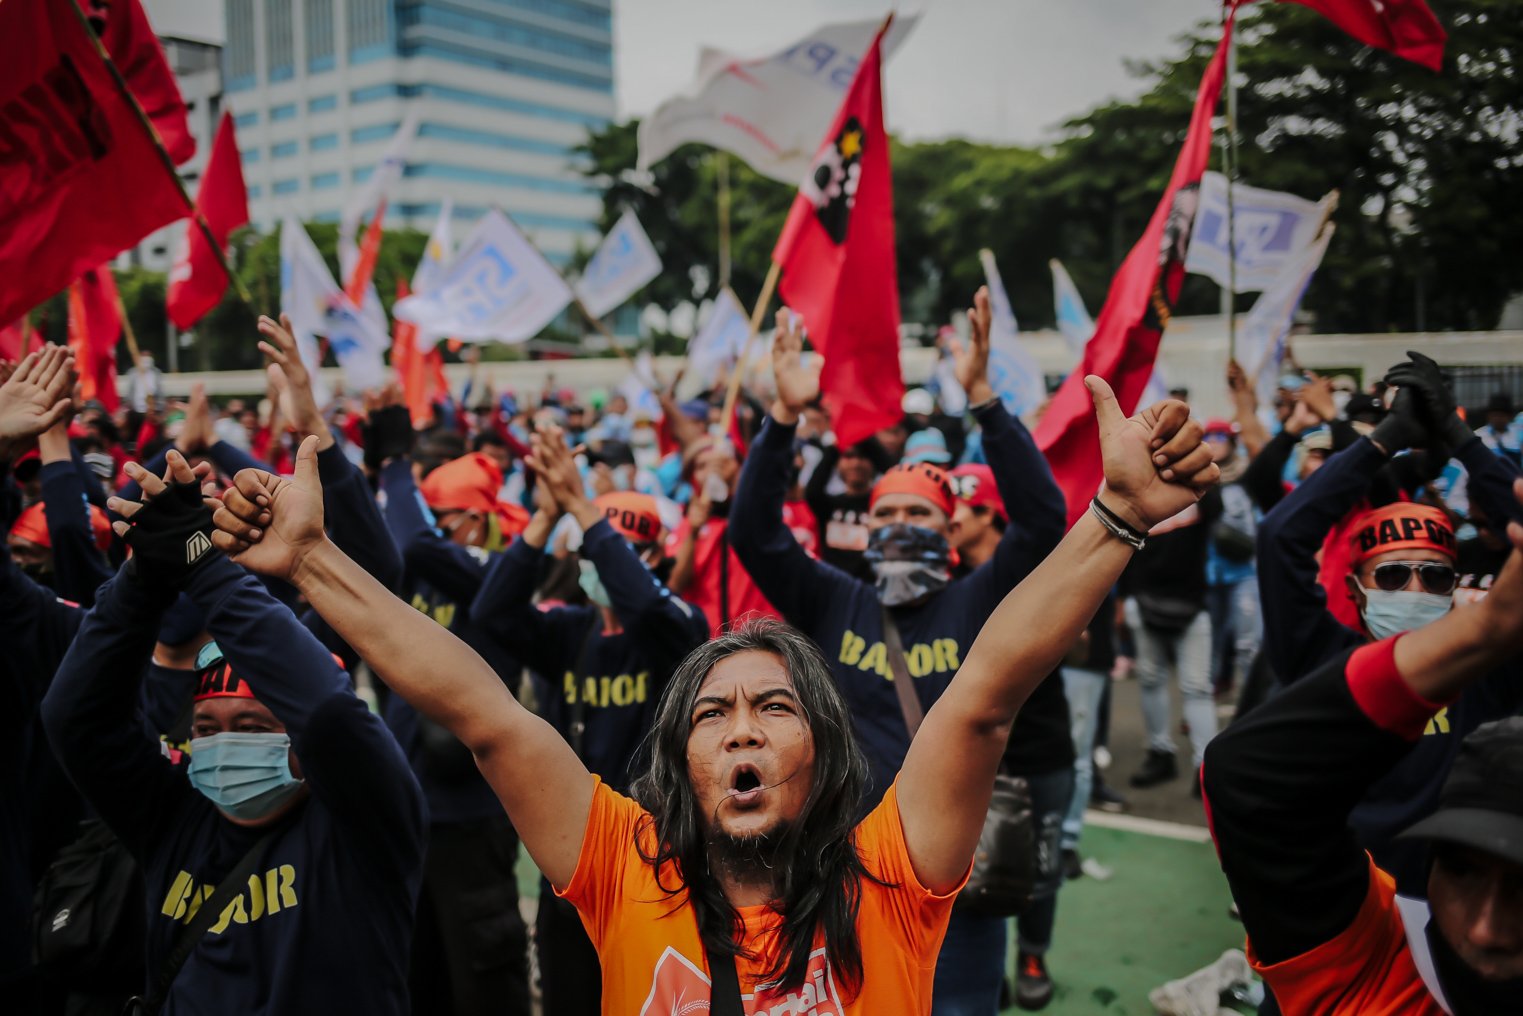 Serikat buruh yang tergabung dalam Partai Buruh melakukan aksi unjuk rasa di depan Gedung DPR RI, Jakarta, Jumat (14/1/2022). Dalam aksinya ribuan buruh se-Jabodetabek ini memiliki empat tnututan salah satunya yakni mendorong pemerintah untuk mencabut UU Omnibus Law Cipta Kerja,